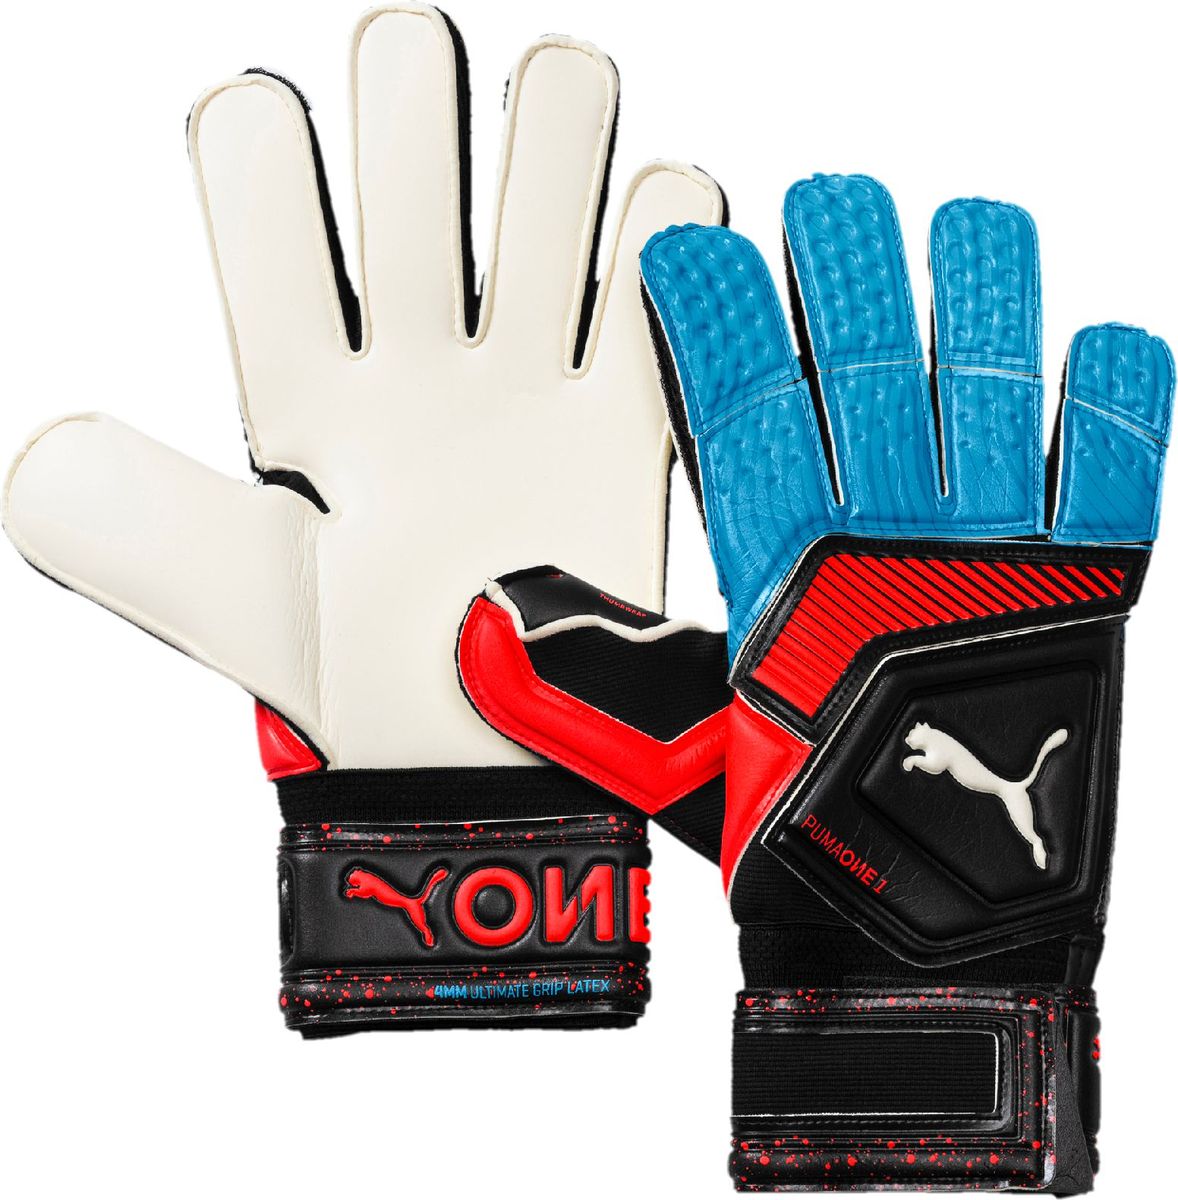 Перчатки вратарские Puma One Grip 1 RC, 04147021, черный, синий, размер 9